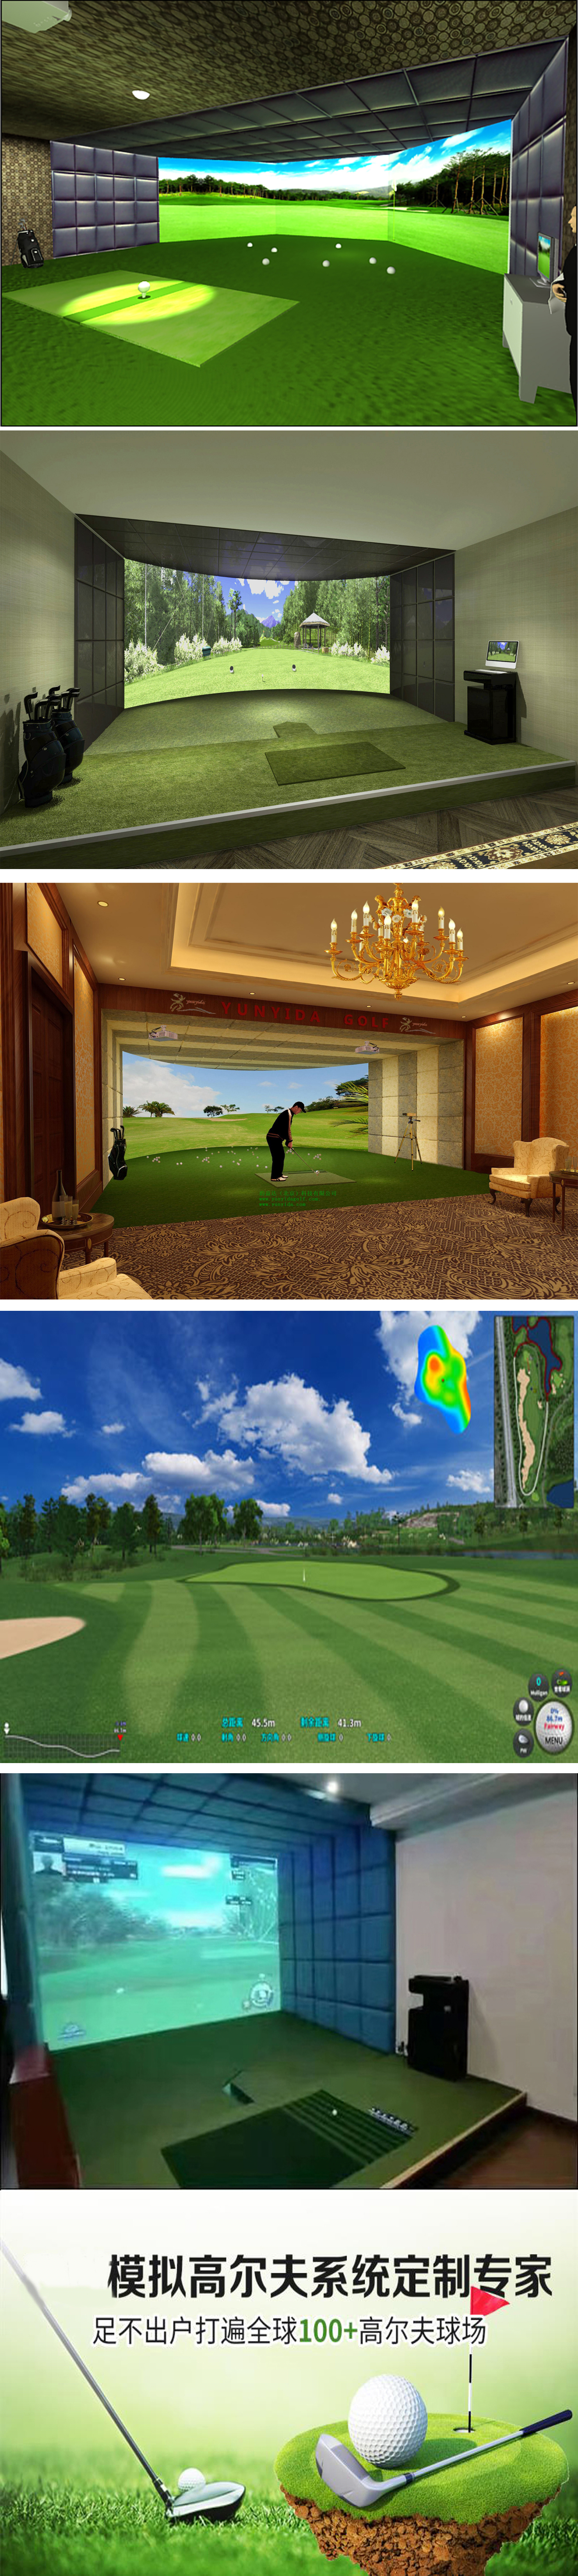 室内模拟高尔夫 01.jpg